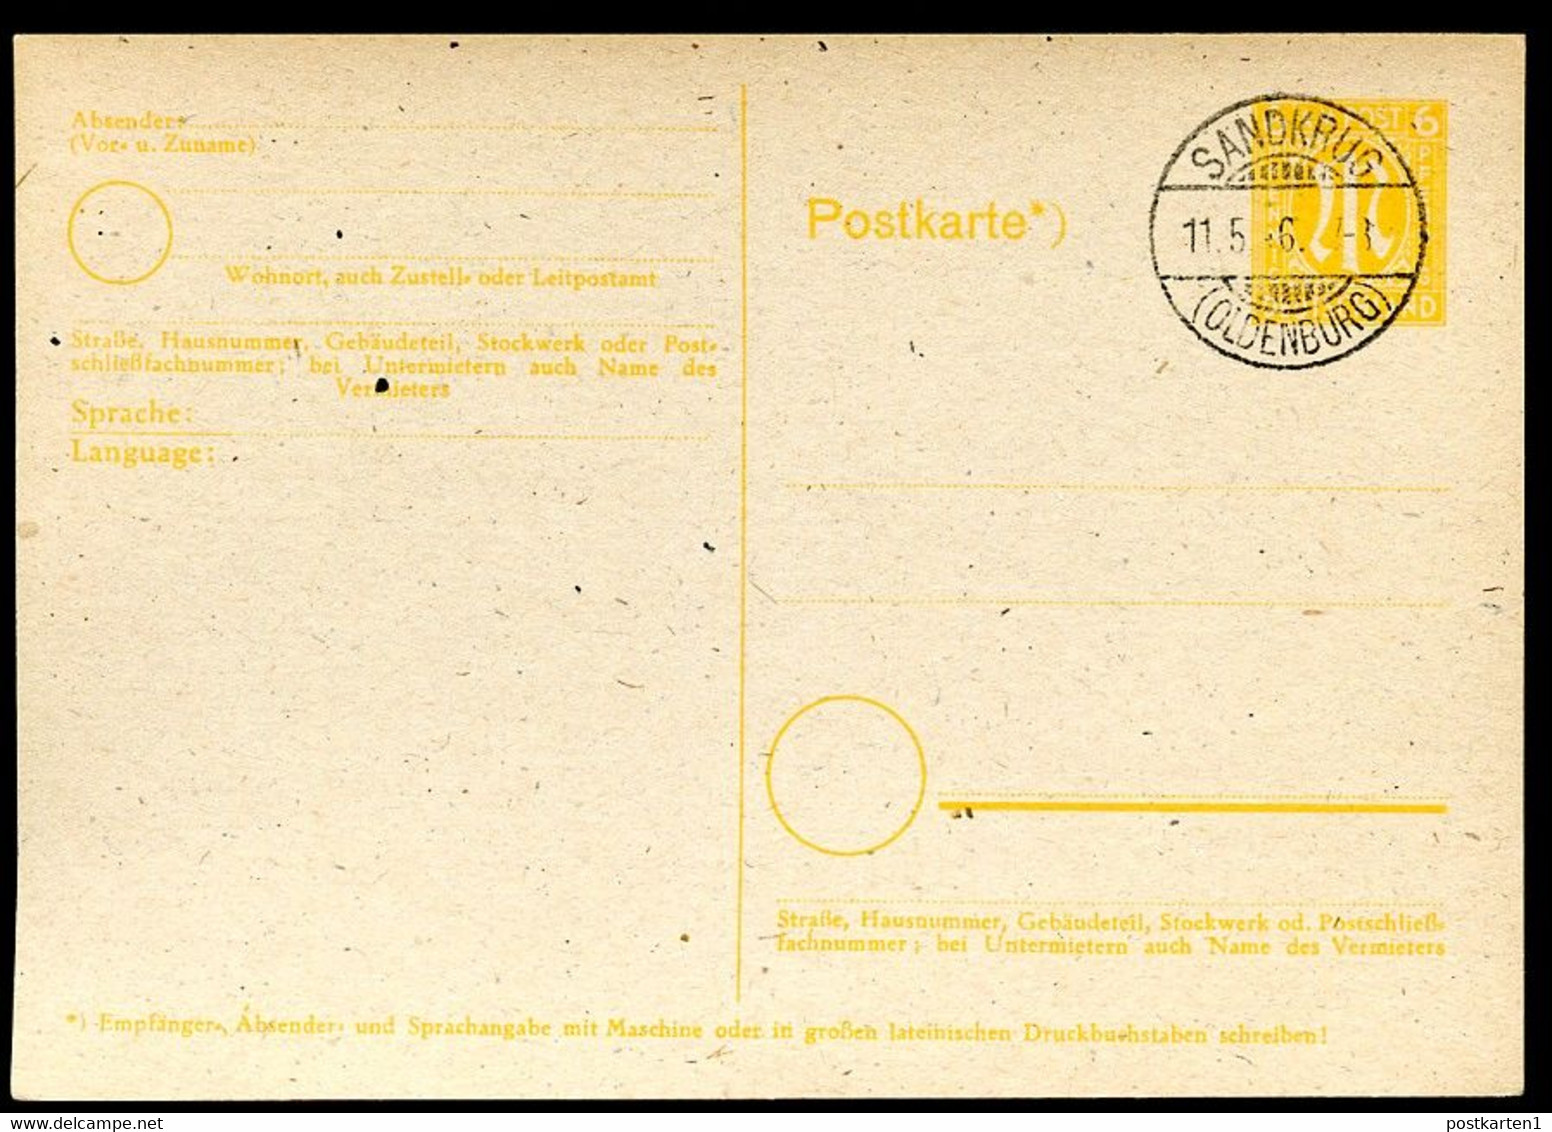 BRITISCHE ZONE P 905 Postkarte Sandkrug (Hatten) 11.5.1946 - Behelfsausgaben Britische Zone